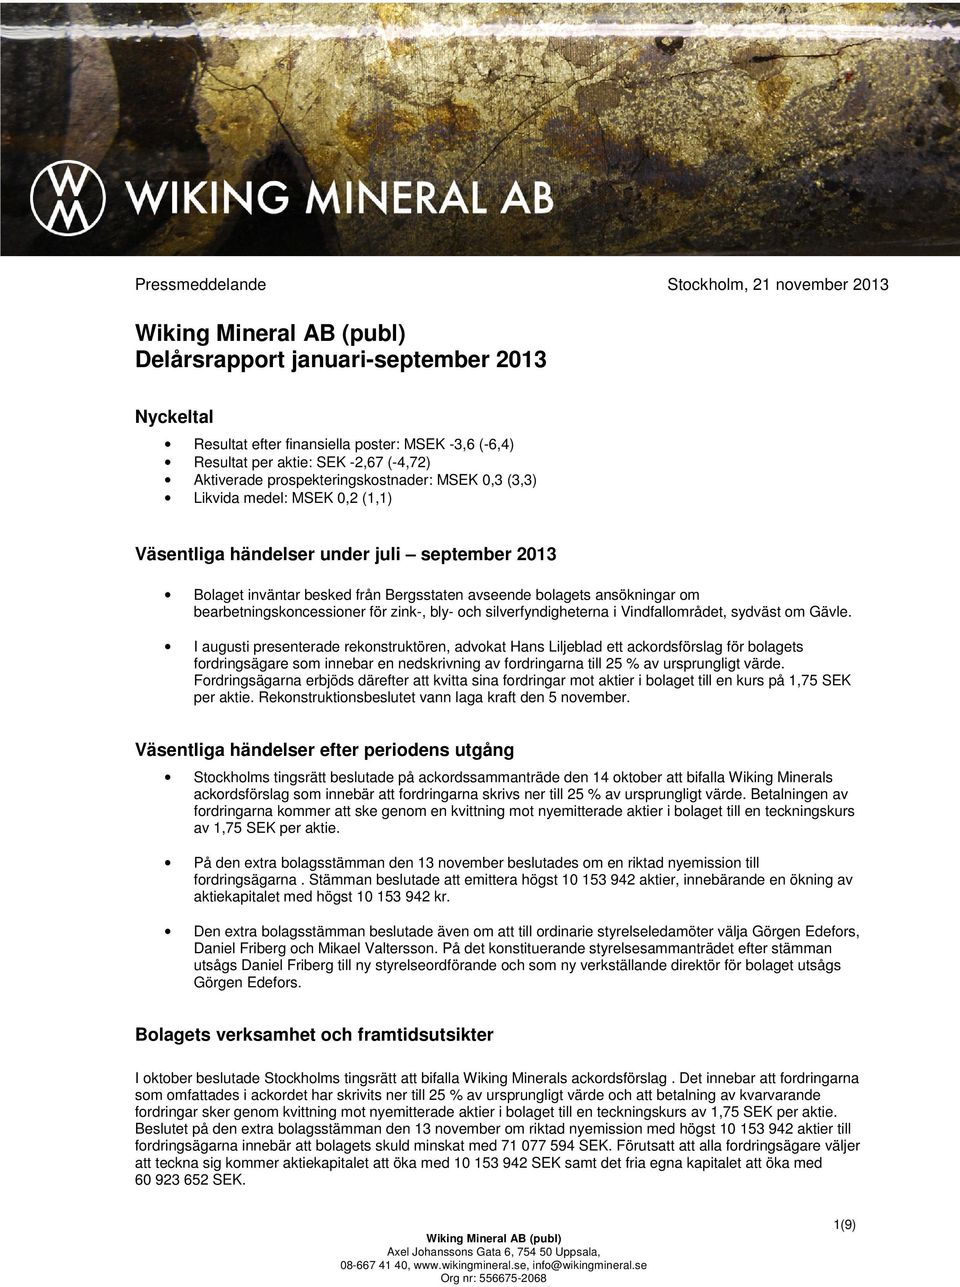 bearbetningskoncessioner för zink-, bly- och silverfyndigheterna i Vindfallområdet, sydväst om Gävle.